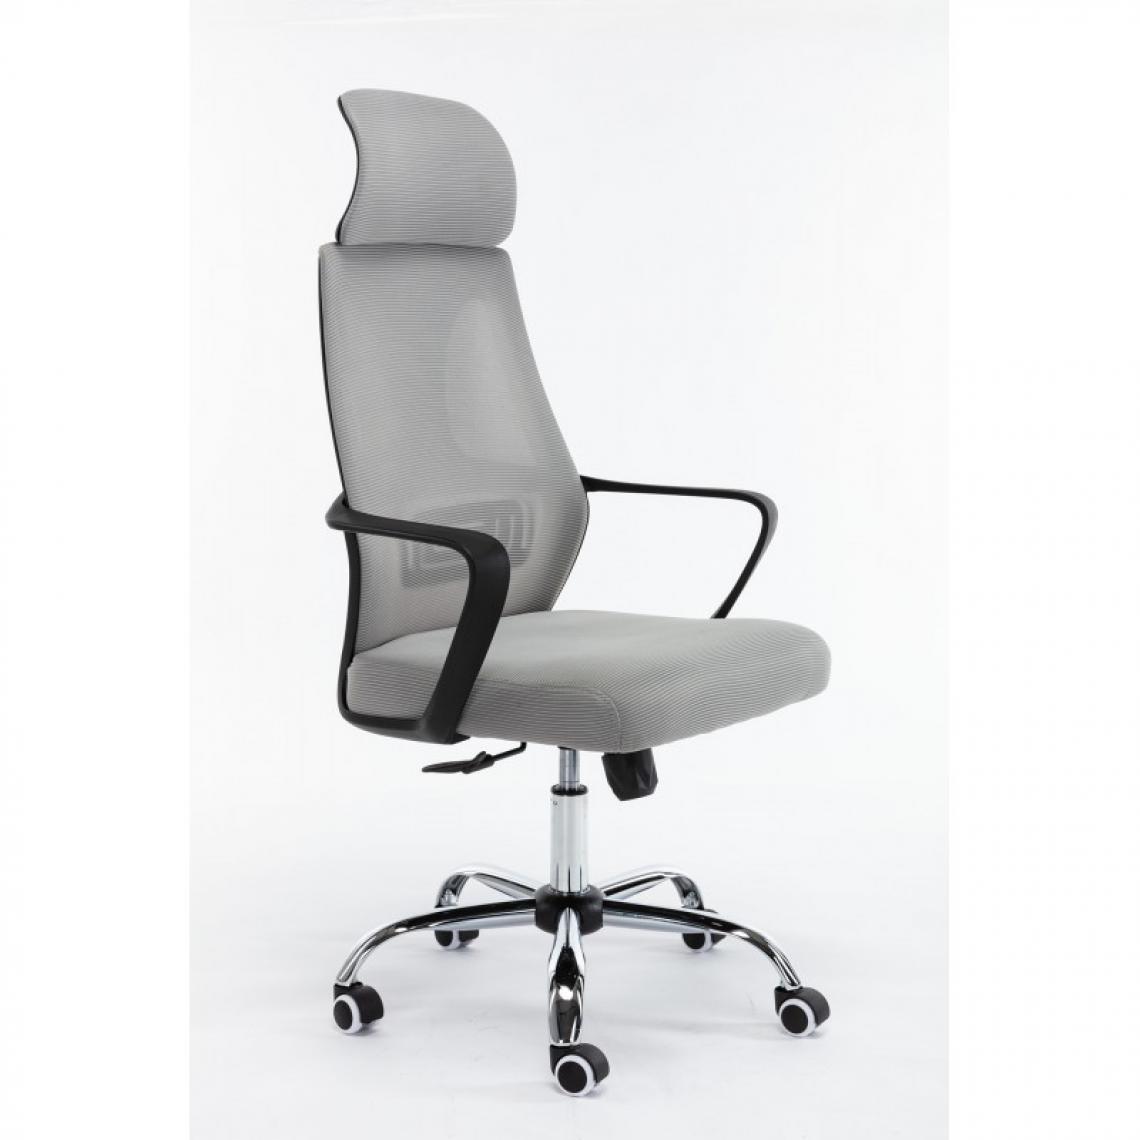 Hucoco - ELIASS - Fauteuil de bureau ergonomique - Hauteur ajustable - Avec accoudoirs - Chaise de bureau télétravail - Gris - Chaises